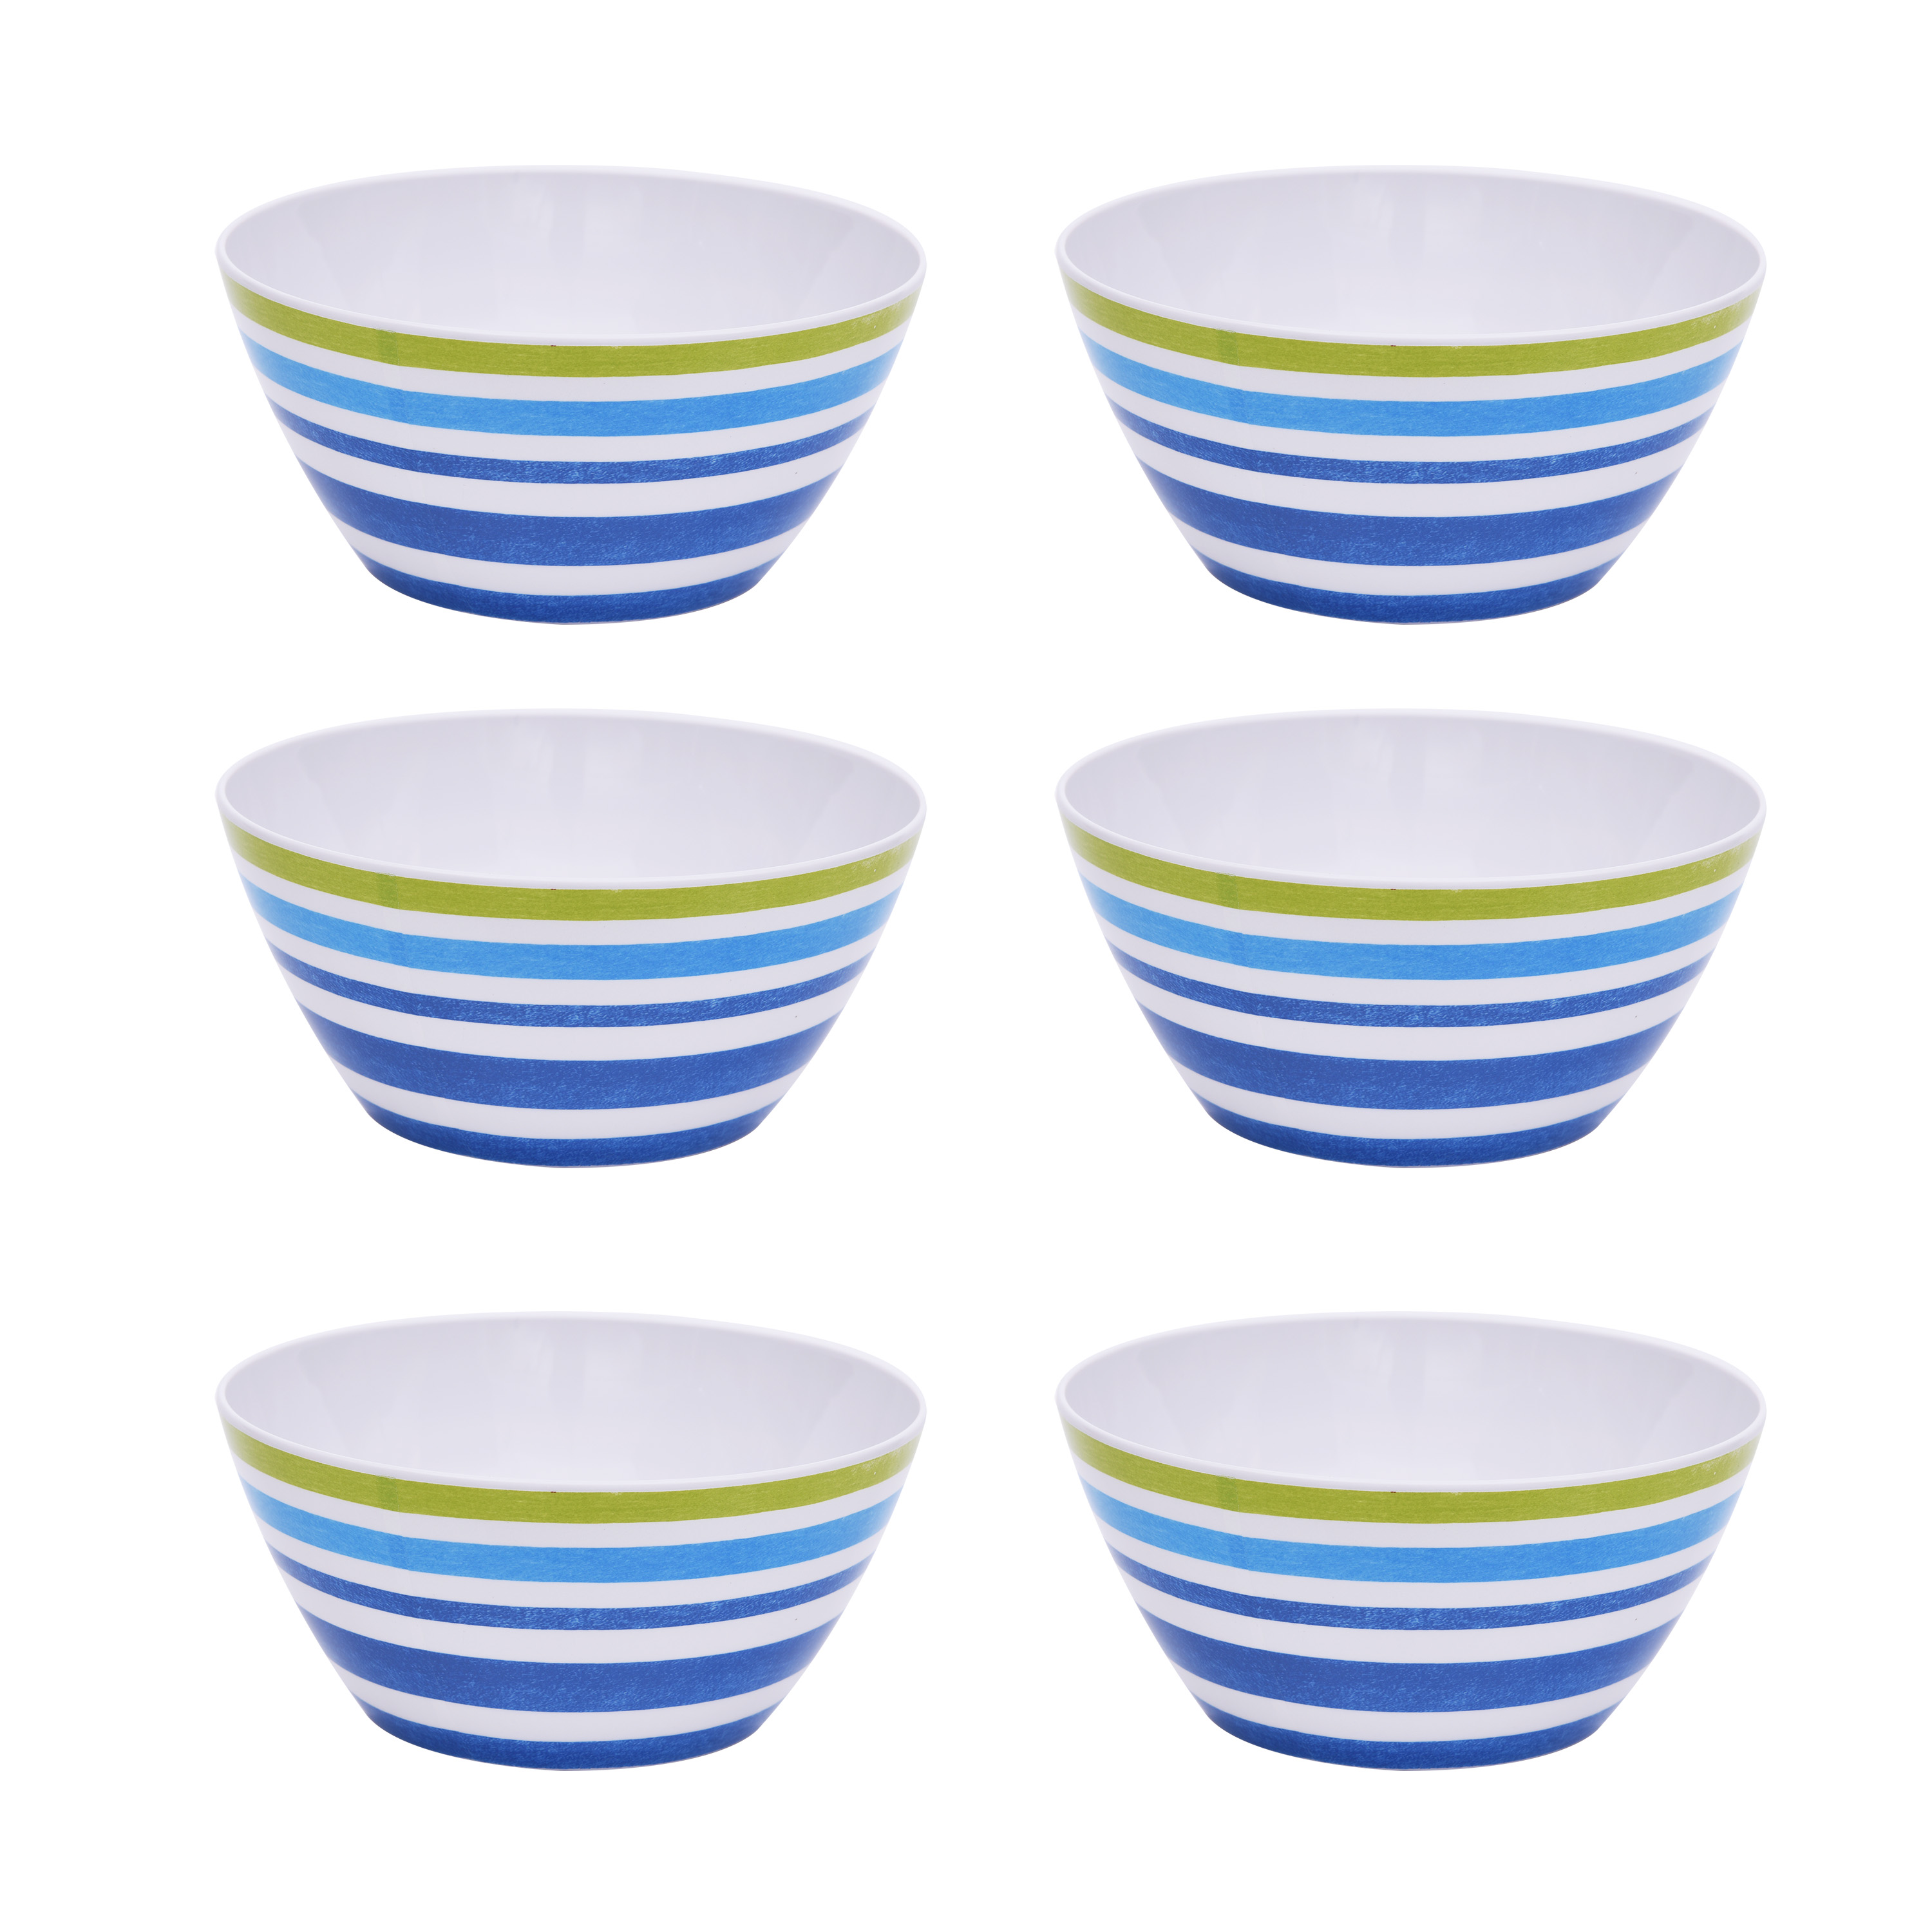 Mainstays Kids Melamine Blue Striped Bowls, Set of 6 - image 1 of 5